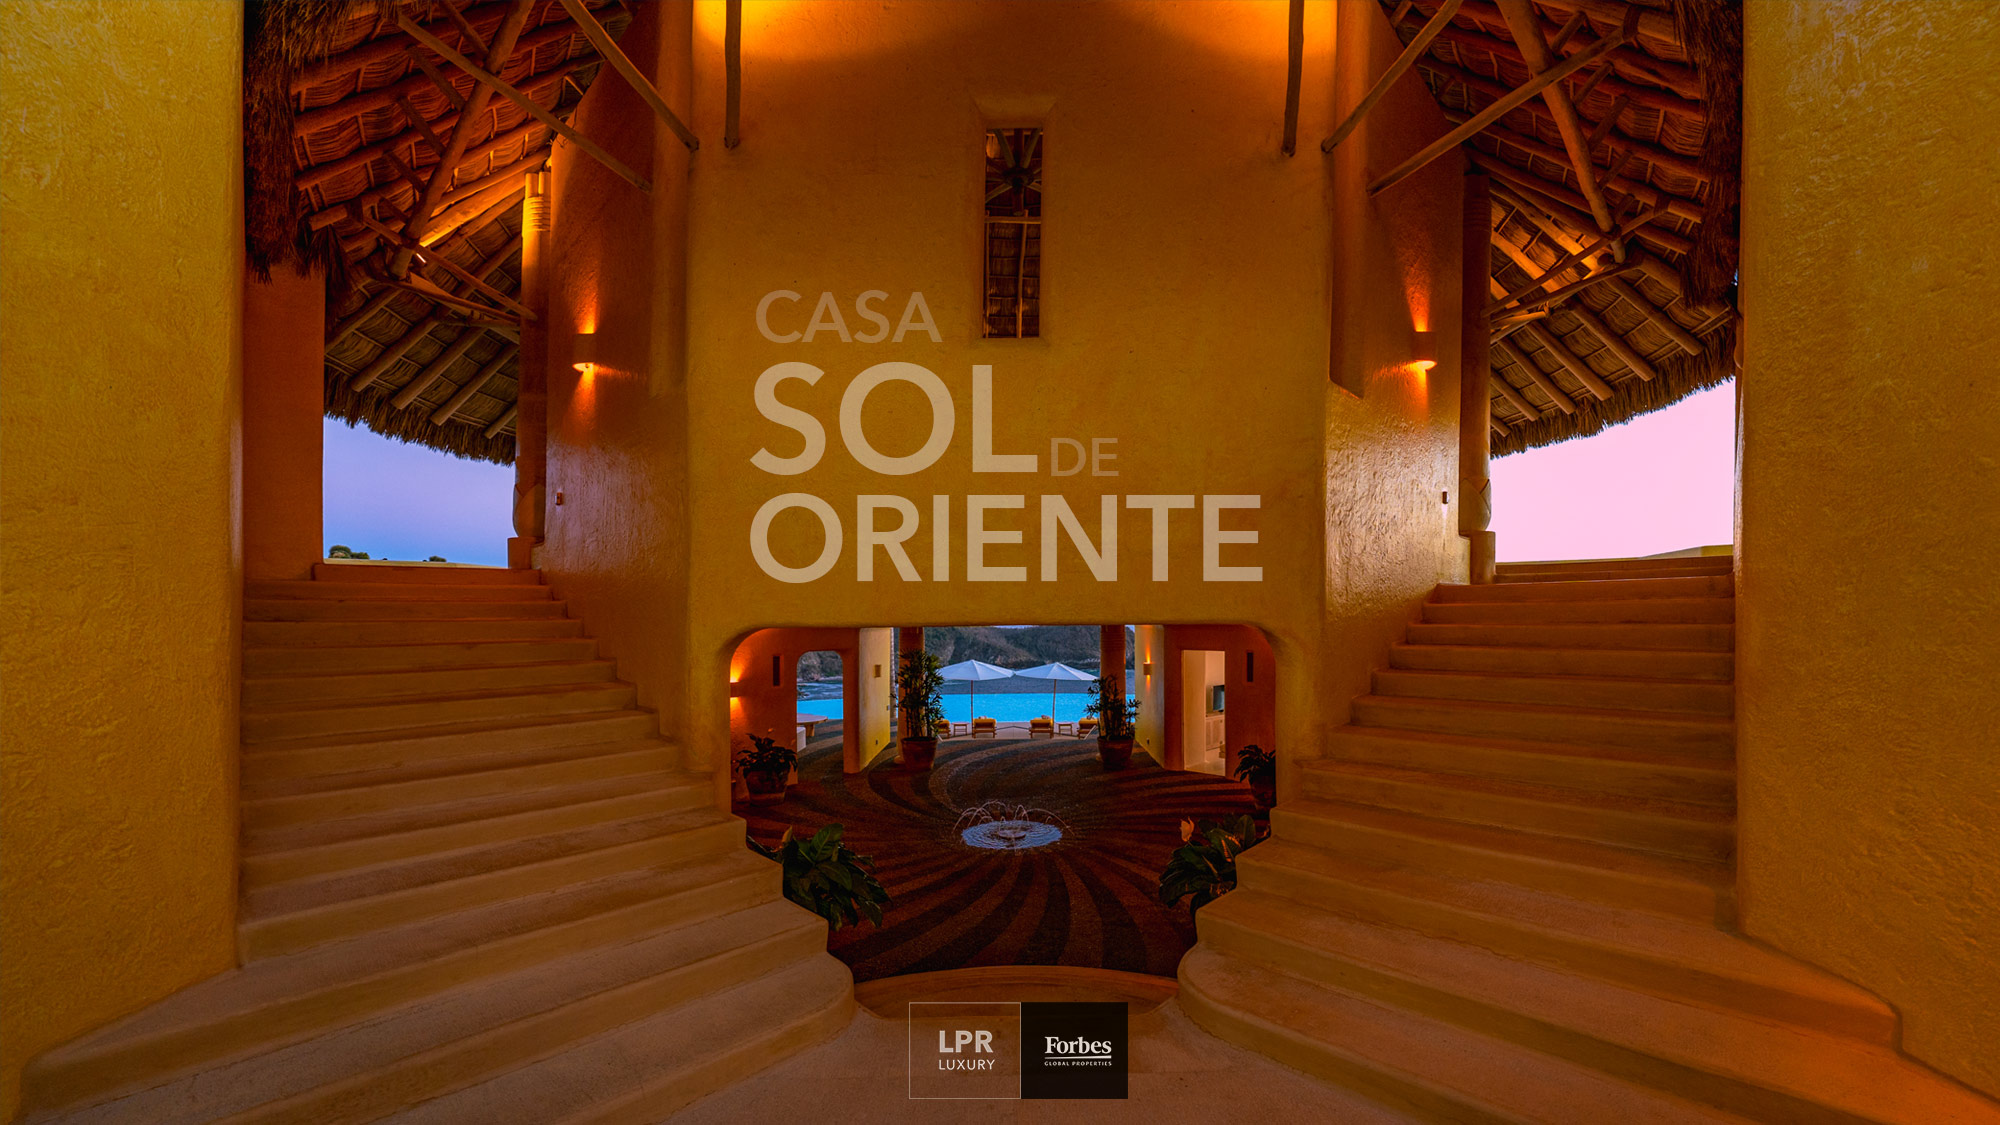 Casa Sol de Oriente - Careyes, Costalegre, Mexico - Real estate and vacation rentals -